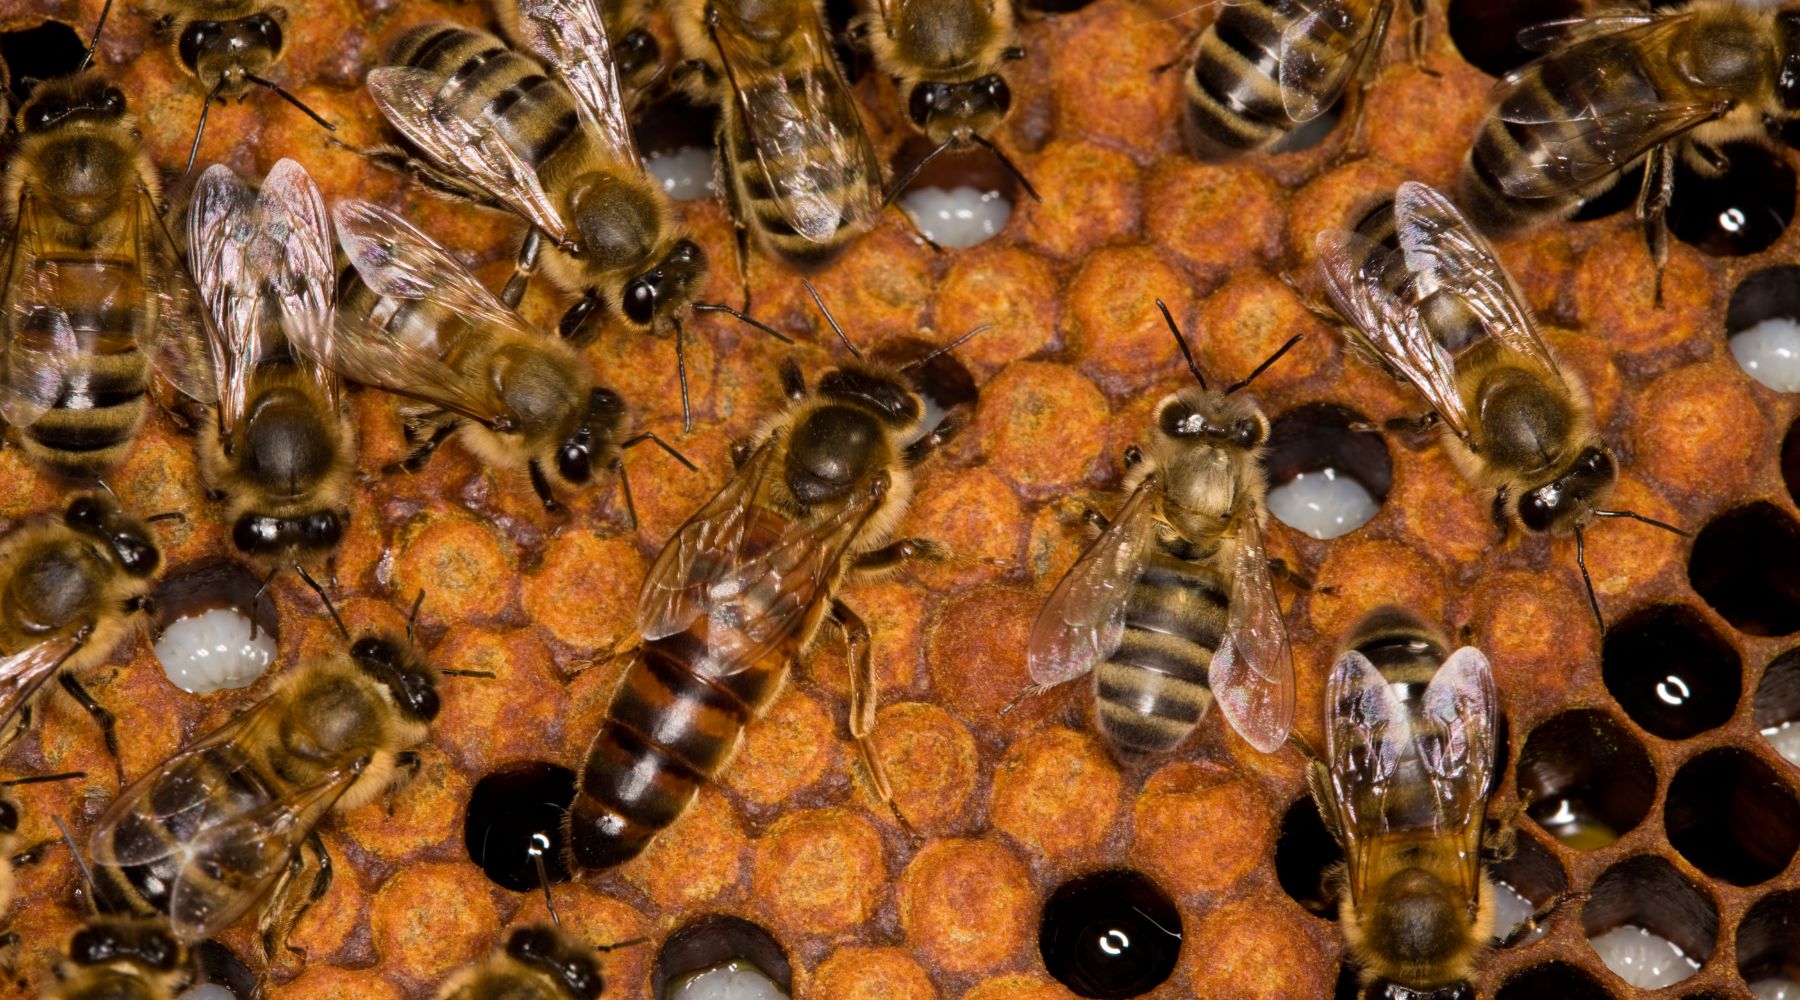 Queen honey bee